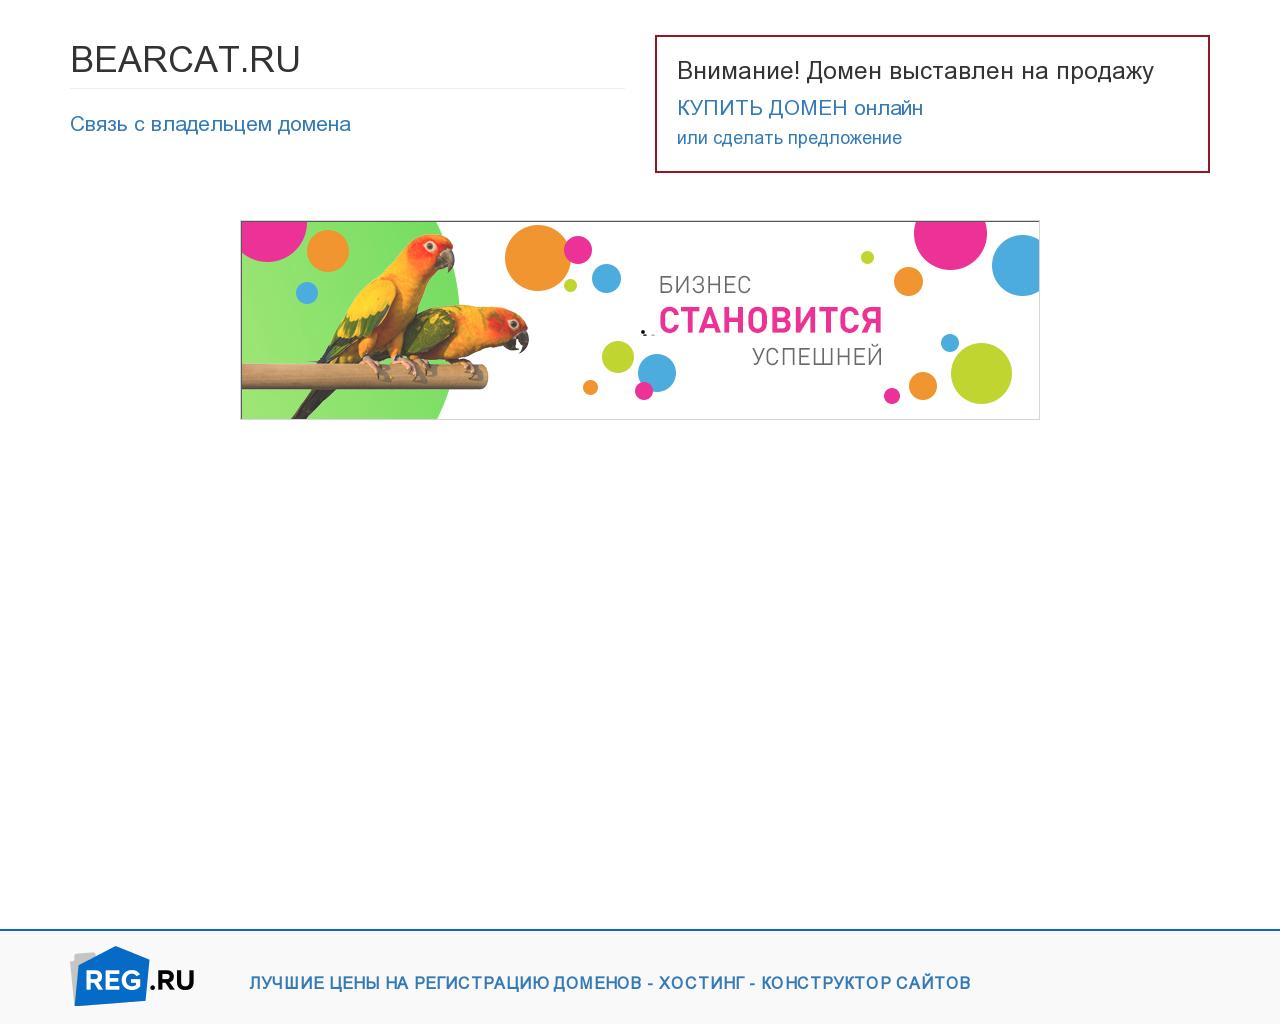 Изображение сайта bearcat.ru в разрешении 1280x1024